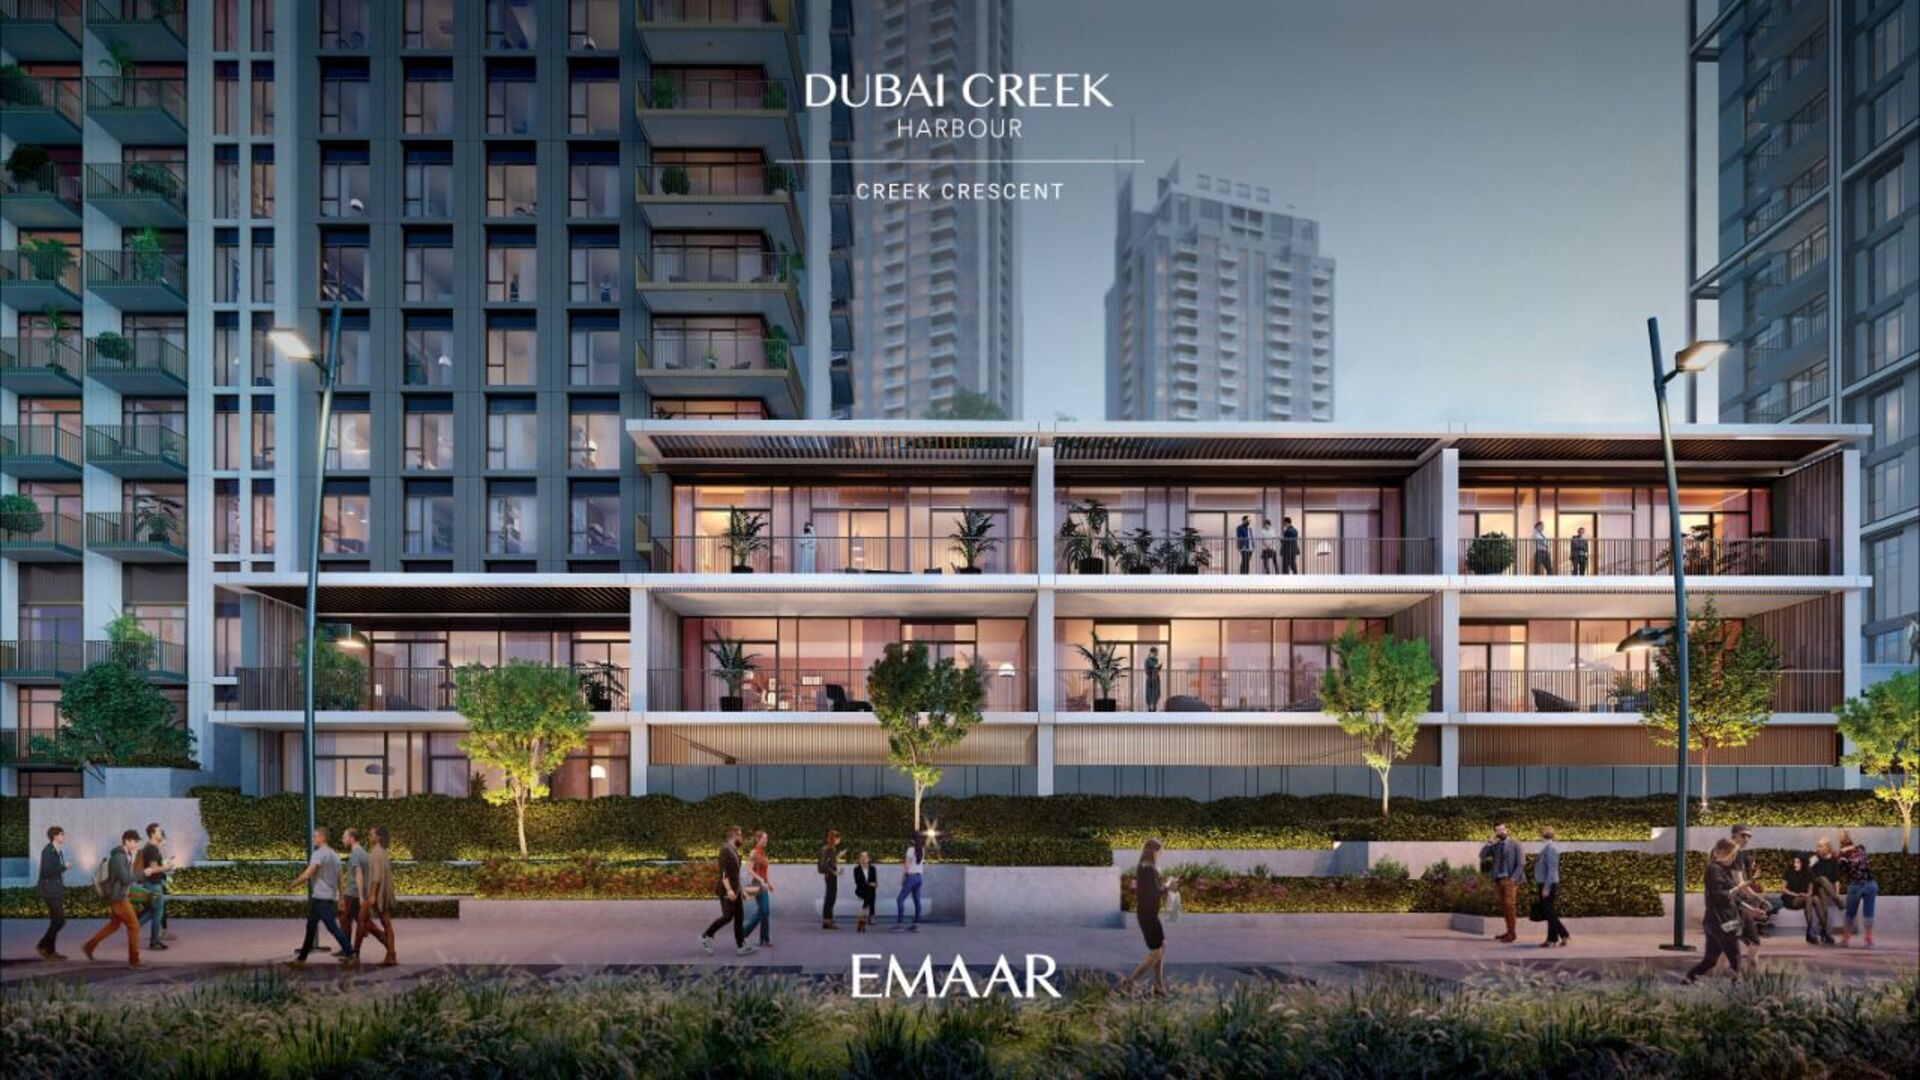 Creek Crescent in Dubai Creek Harbour by Emaar